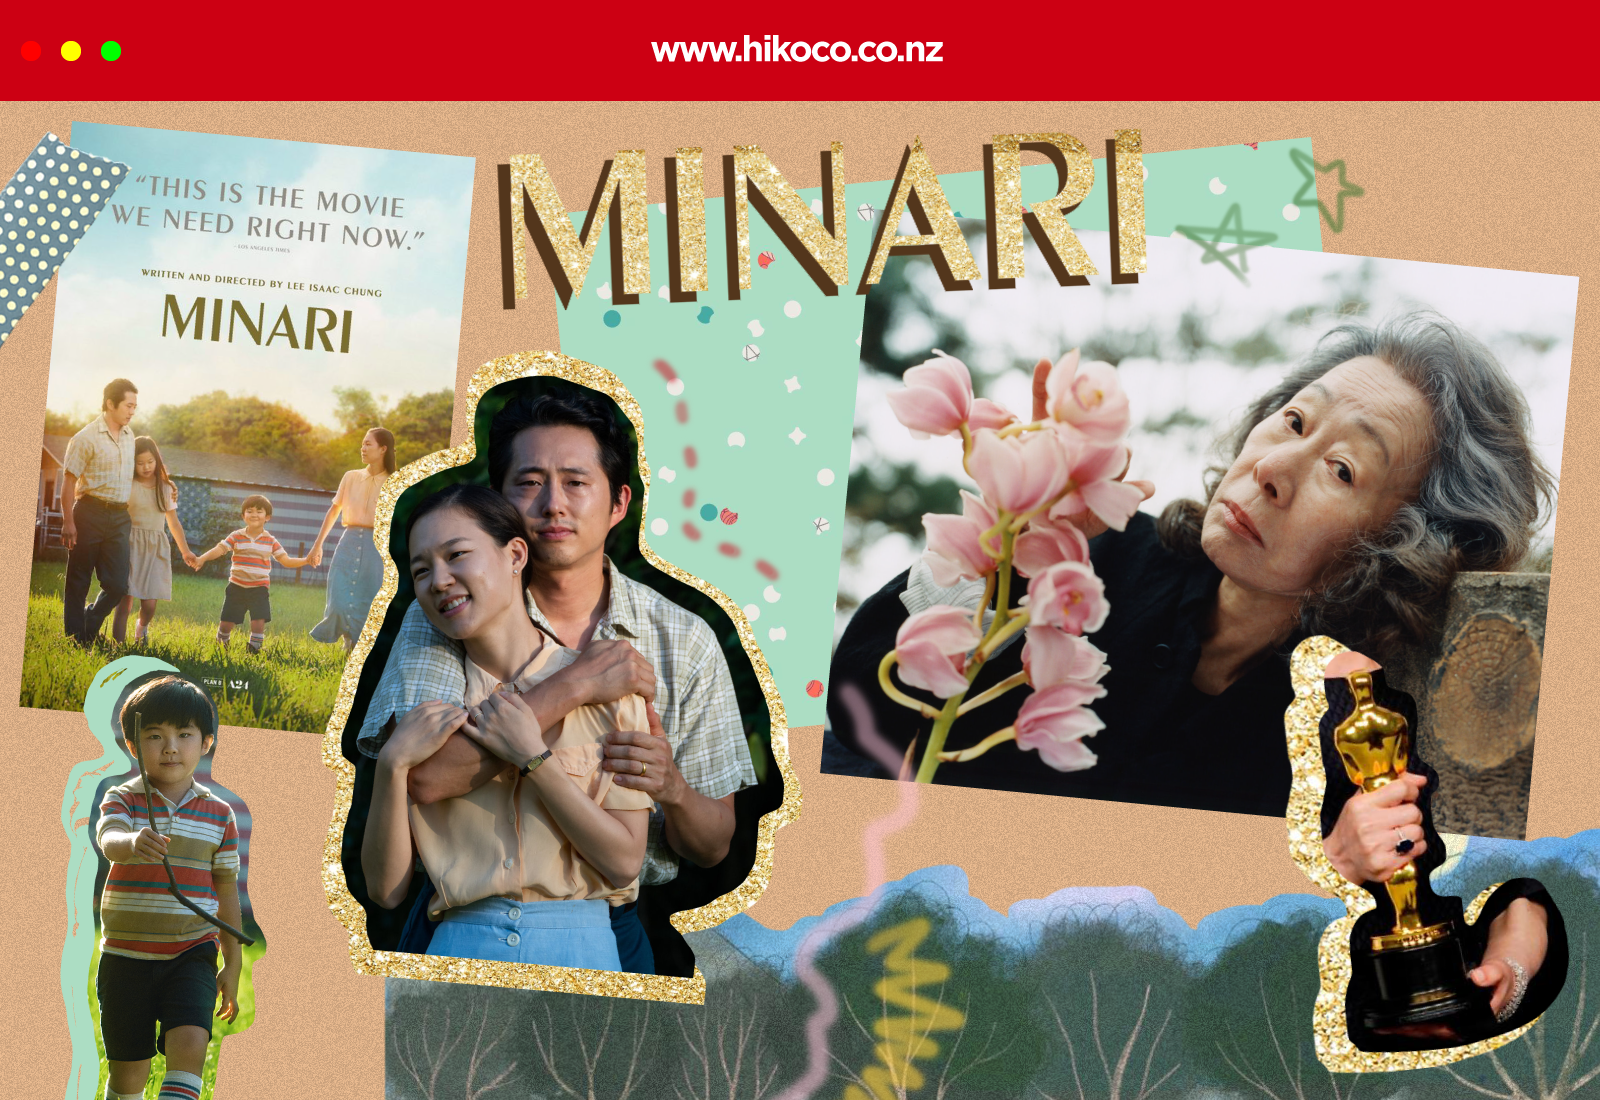 K-Movie: “Minari is wonderful. Wonderful!”